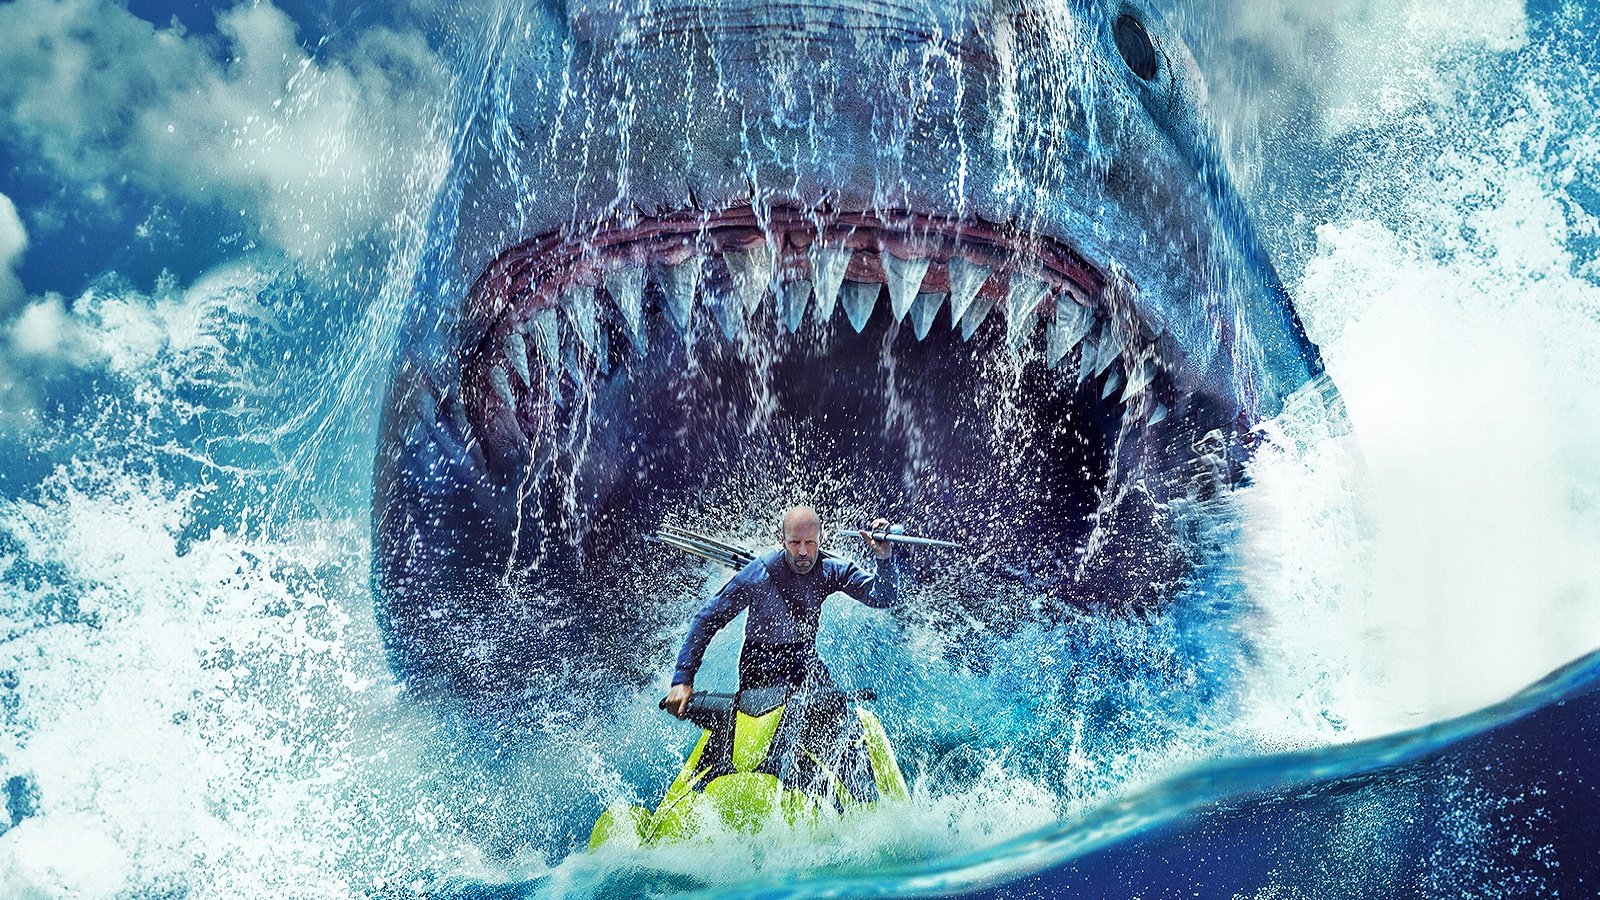 Shark 2 - L'abisso: la steelbook (4K Ultra HD + Blu-Ray) del film con Jason Statham è in offerta su Amazon